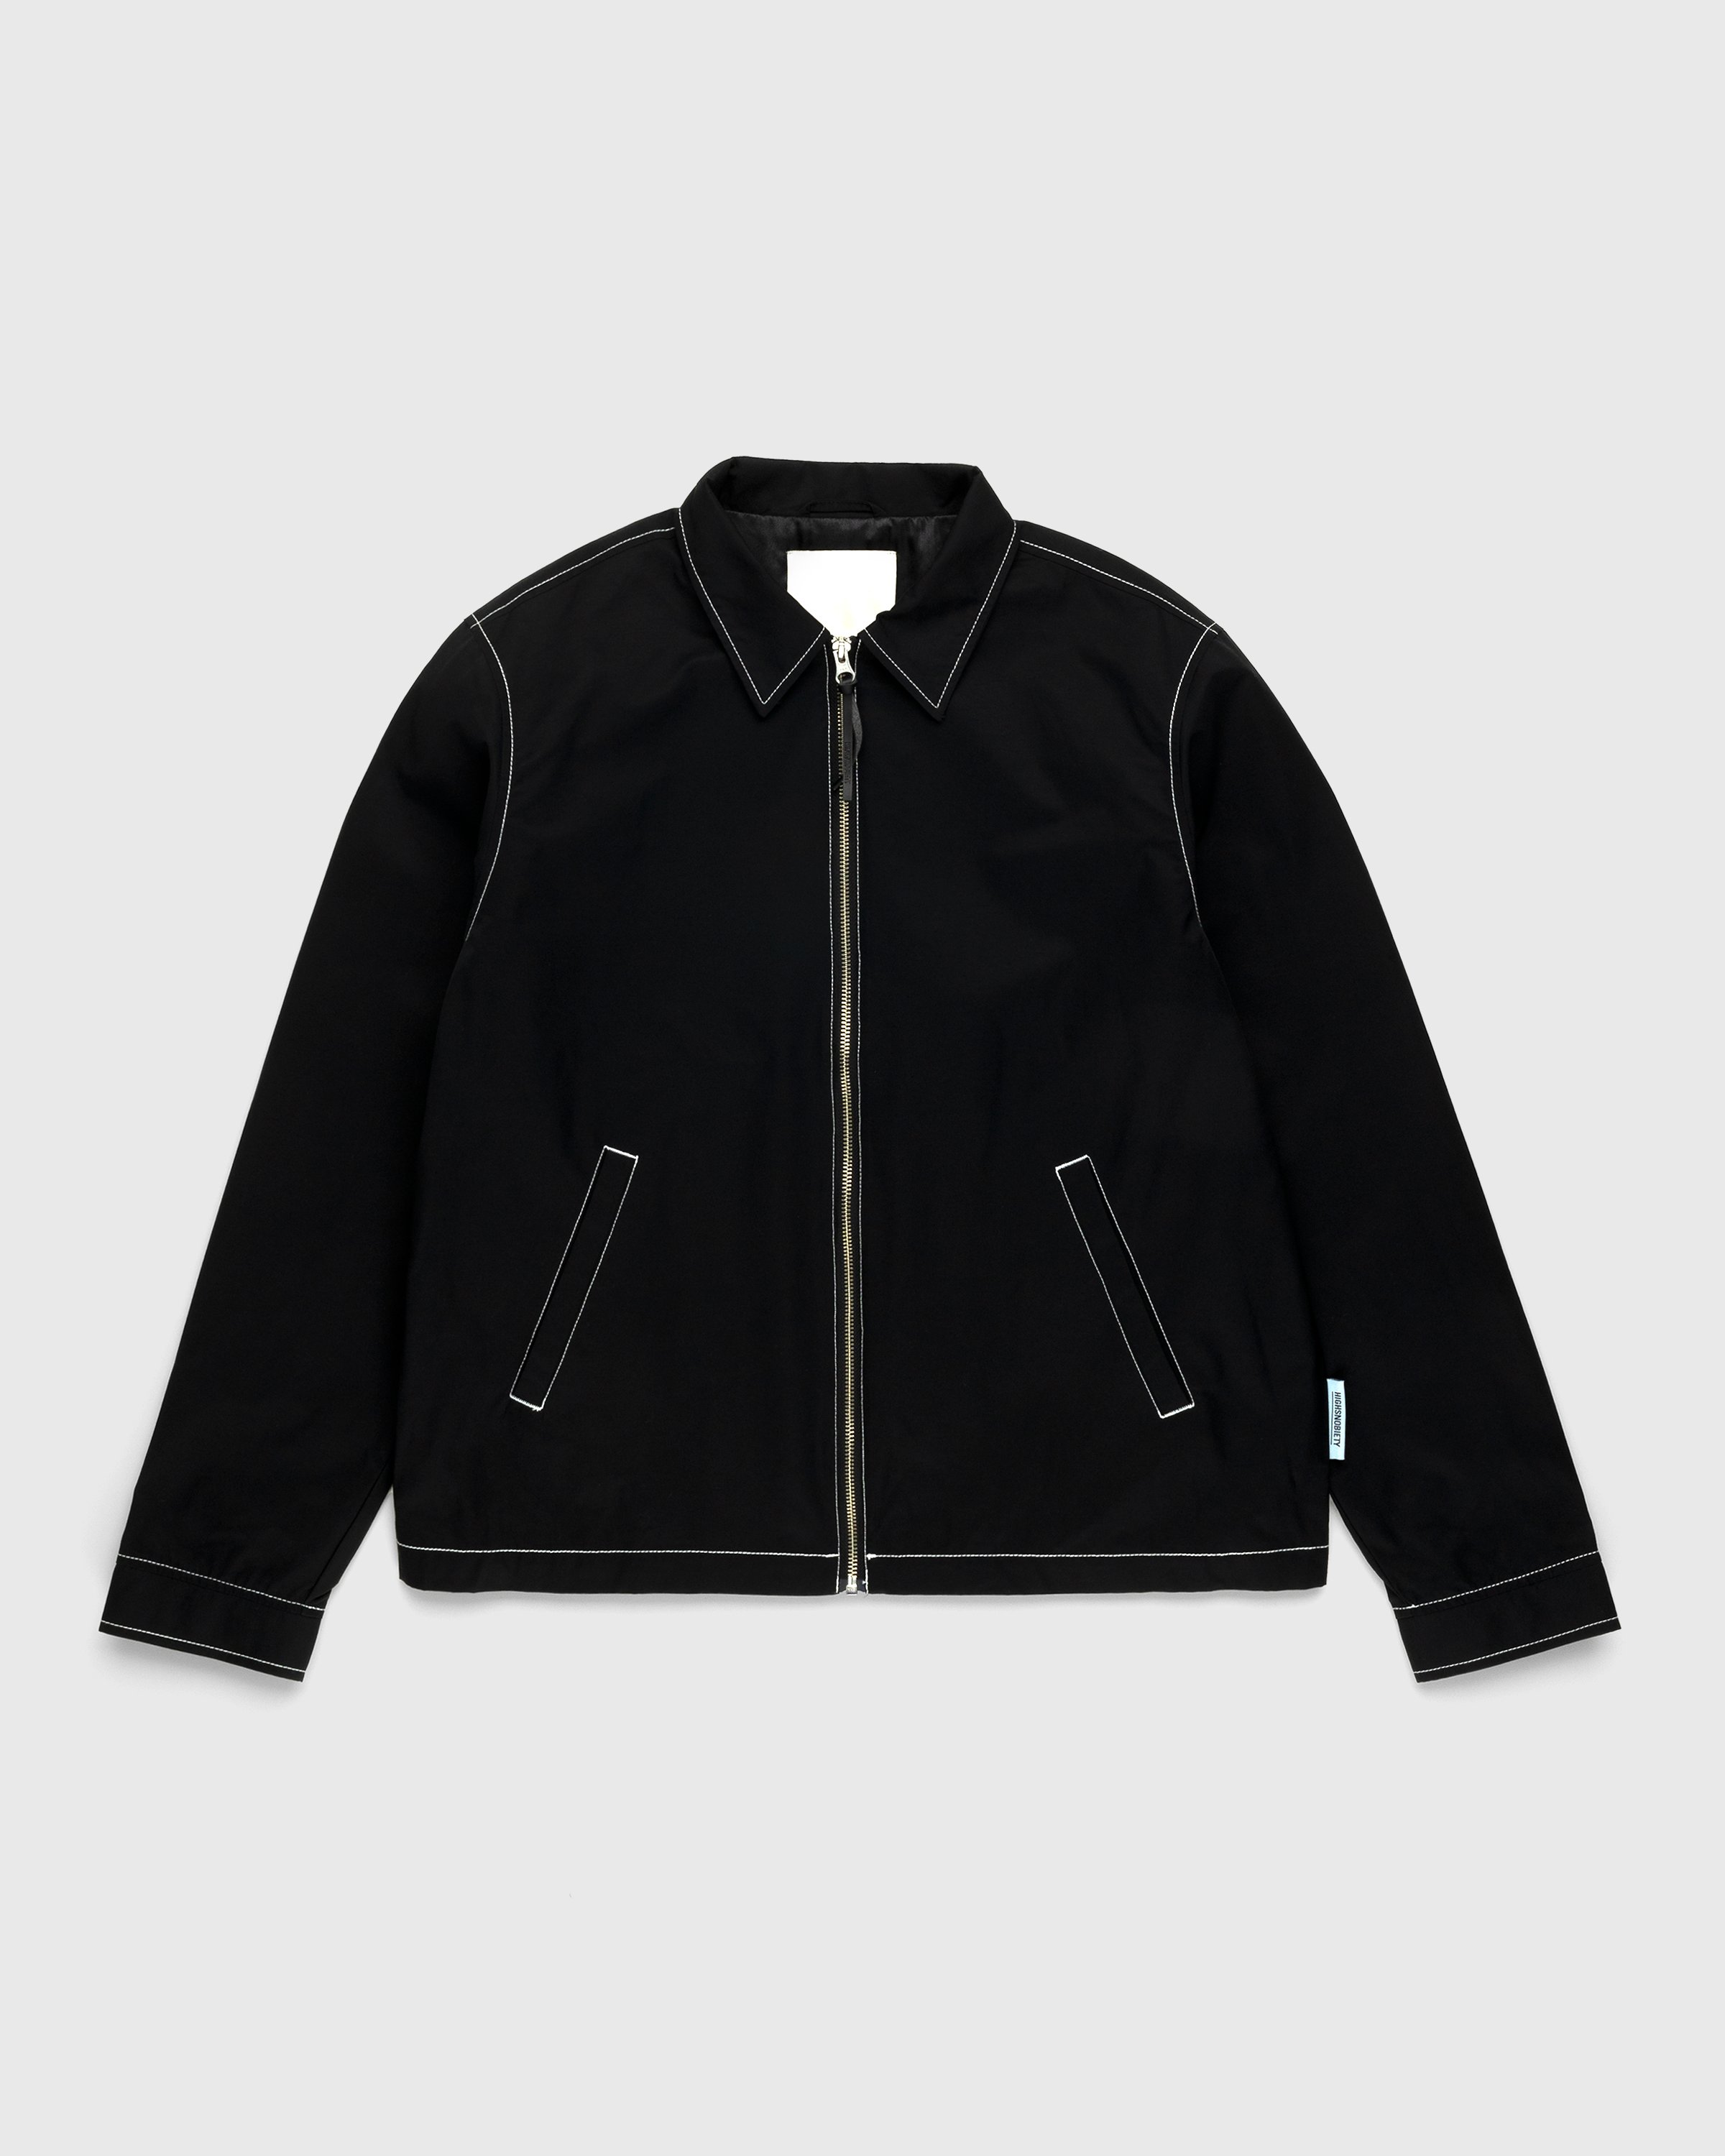 Highsnobiety - Brushed Nylon Jacket Black - Clothing - Black - Image 1